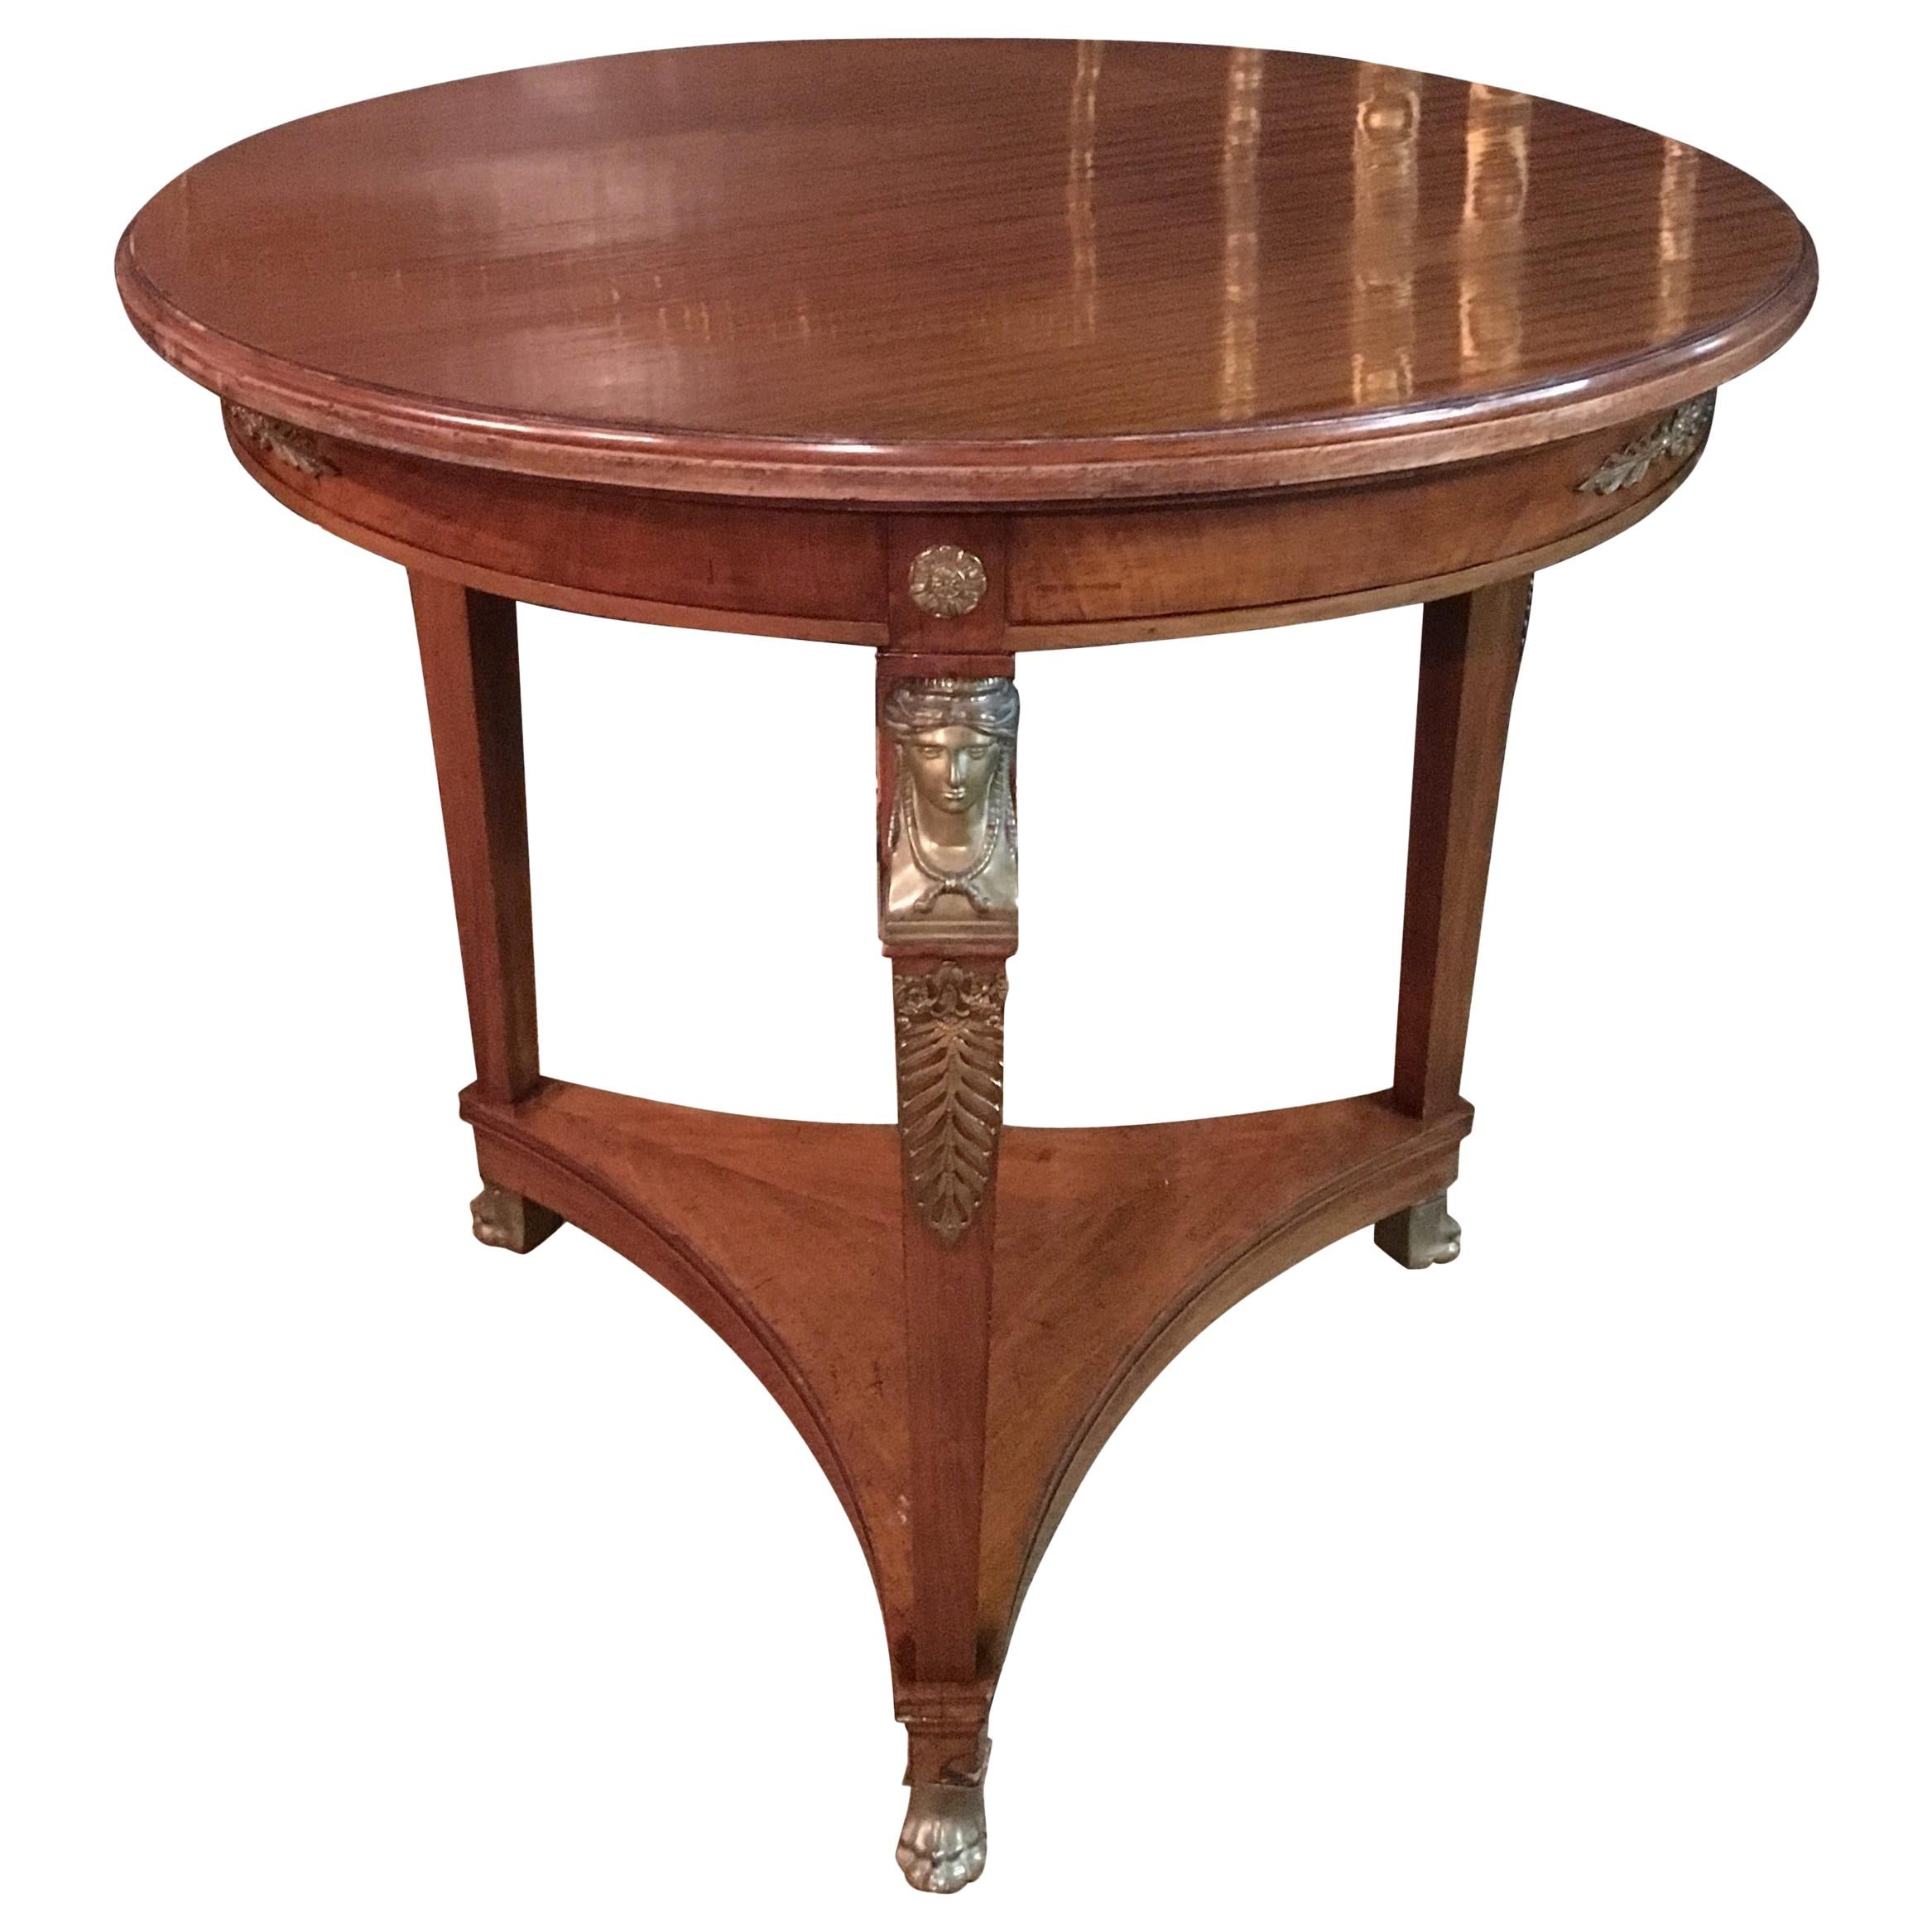 Originale table Empire Antiques circa 1860 - 1880 Placage d'acajou bronzé 